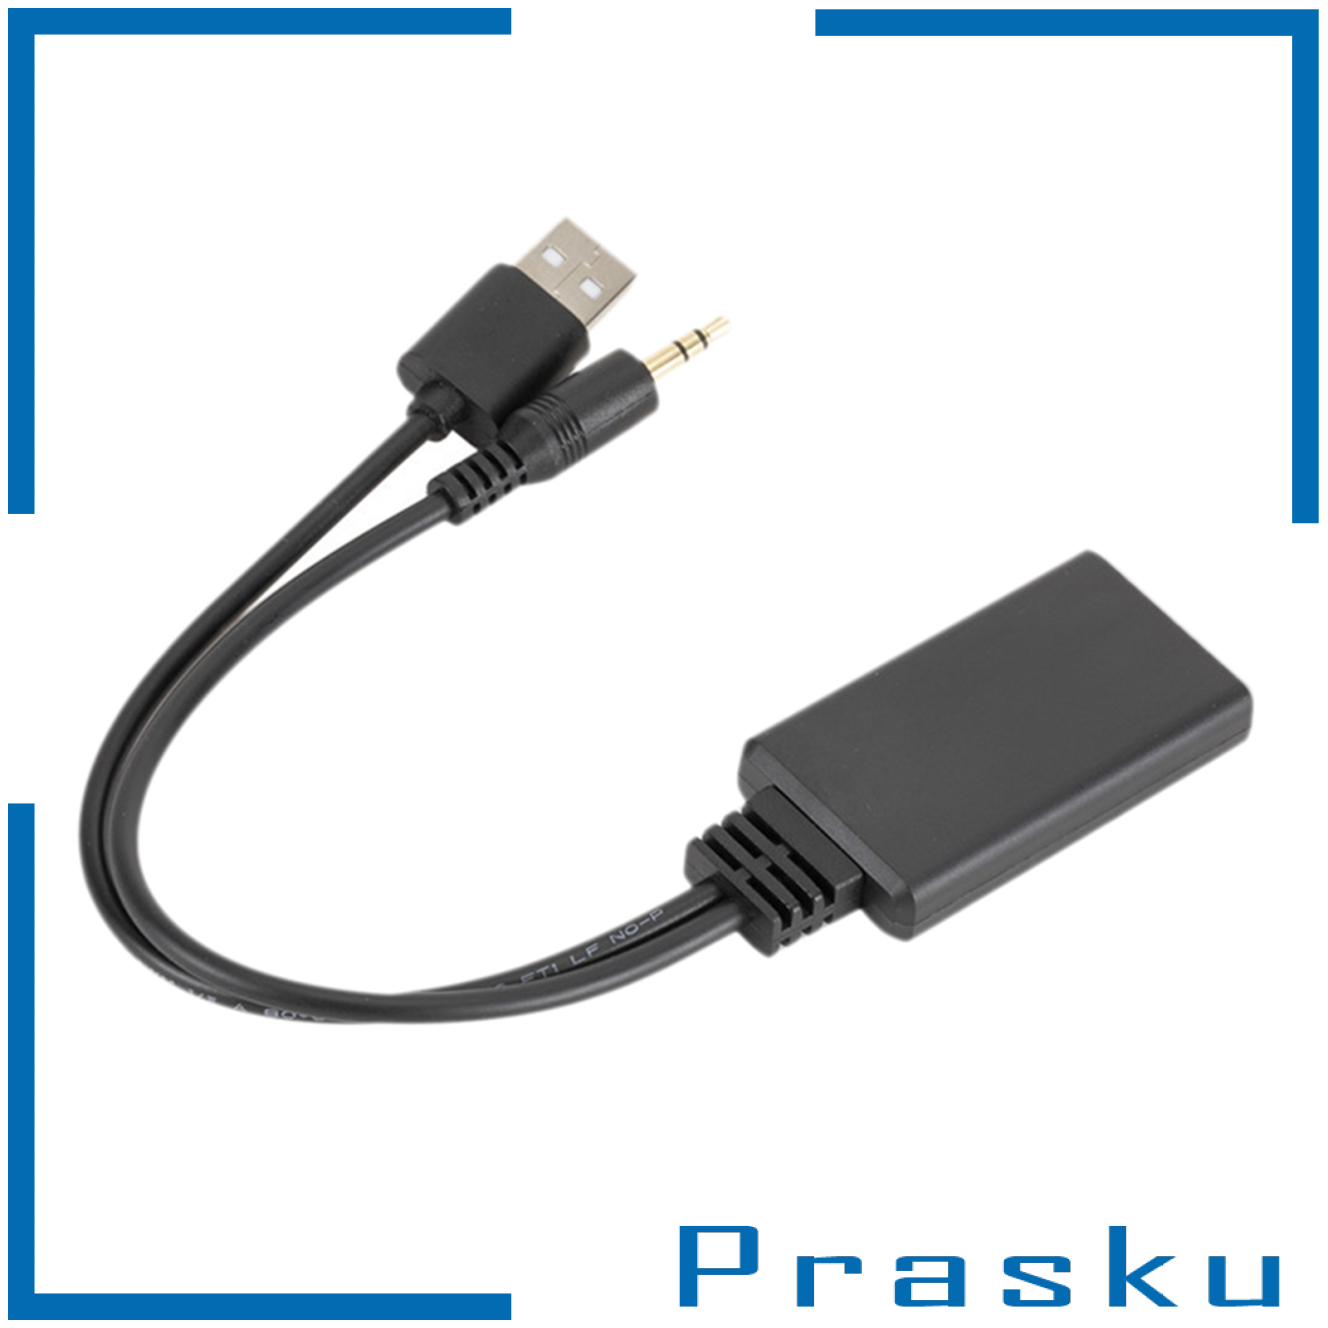 [PRASKU]Mini Bluetooth Receiver Adapter USB + 3.5mm Audio Car Adapter Device Kit New